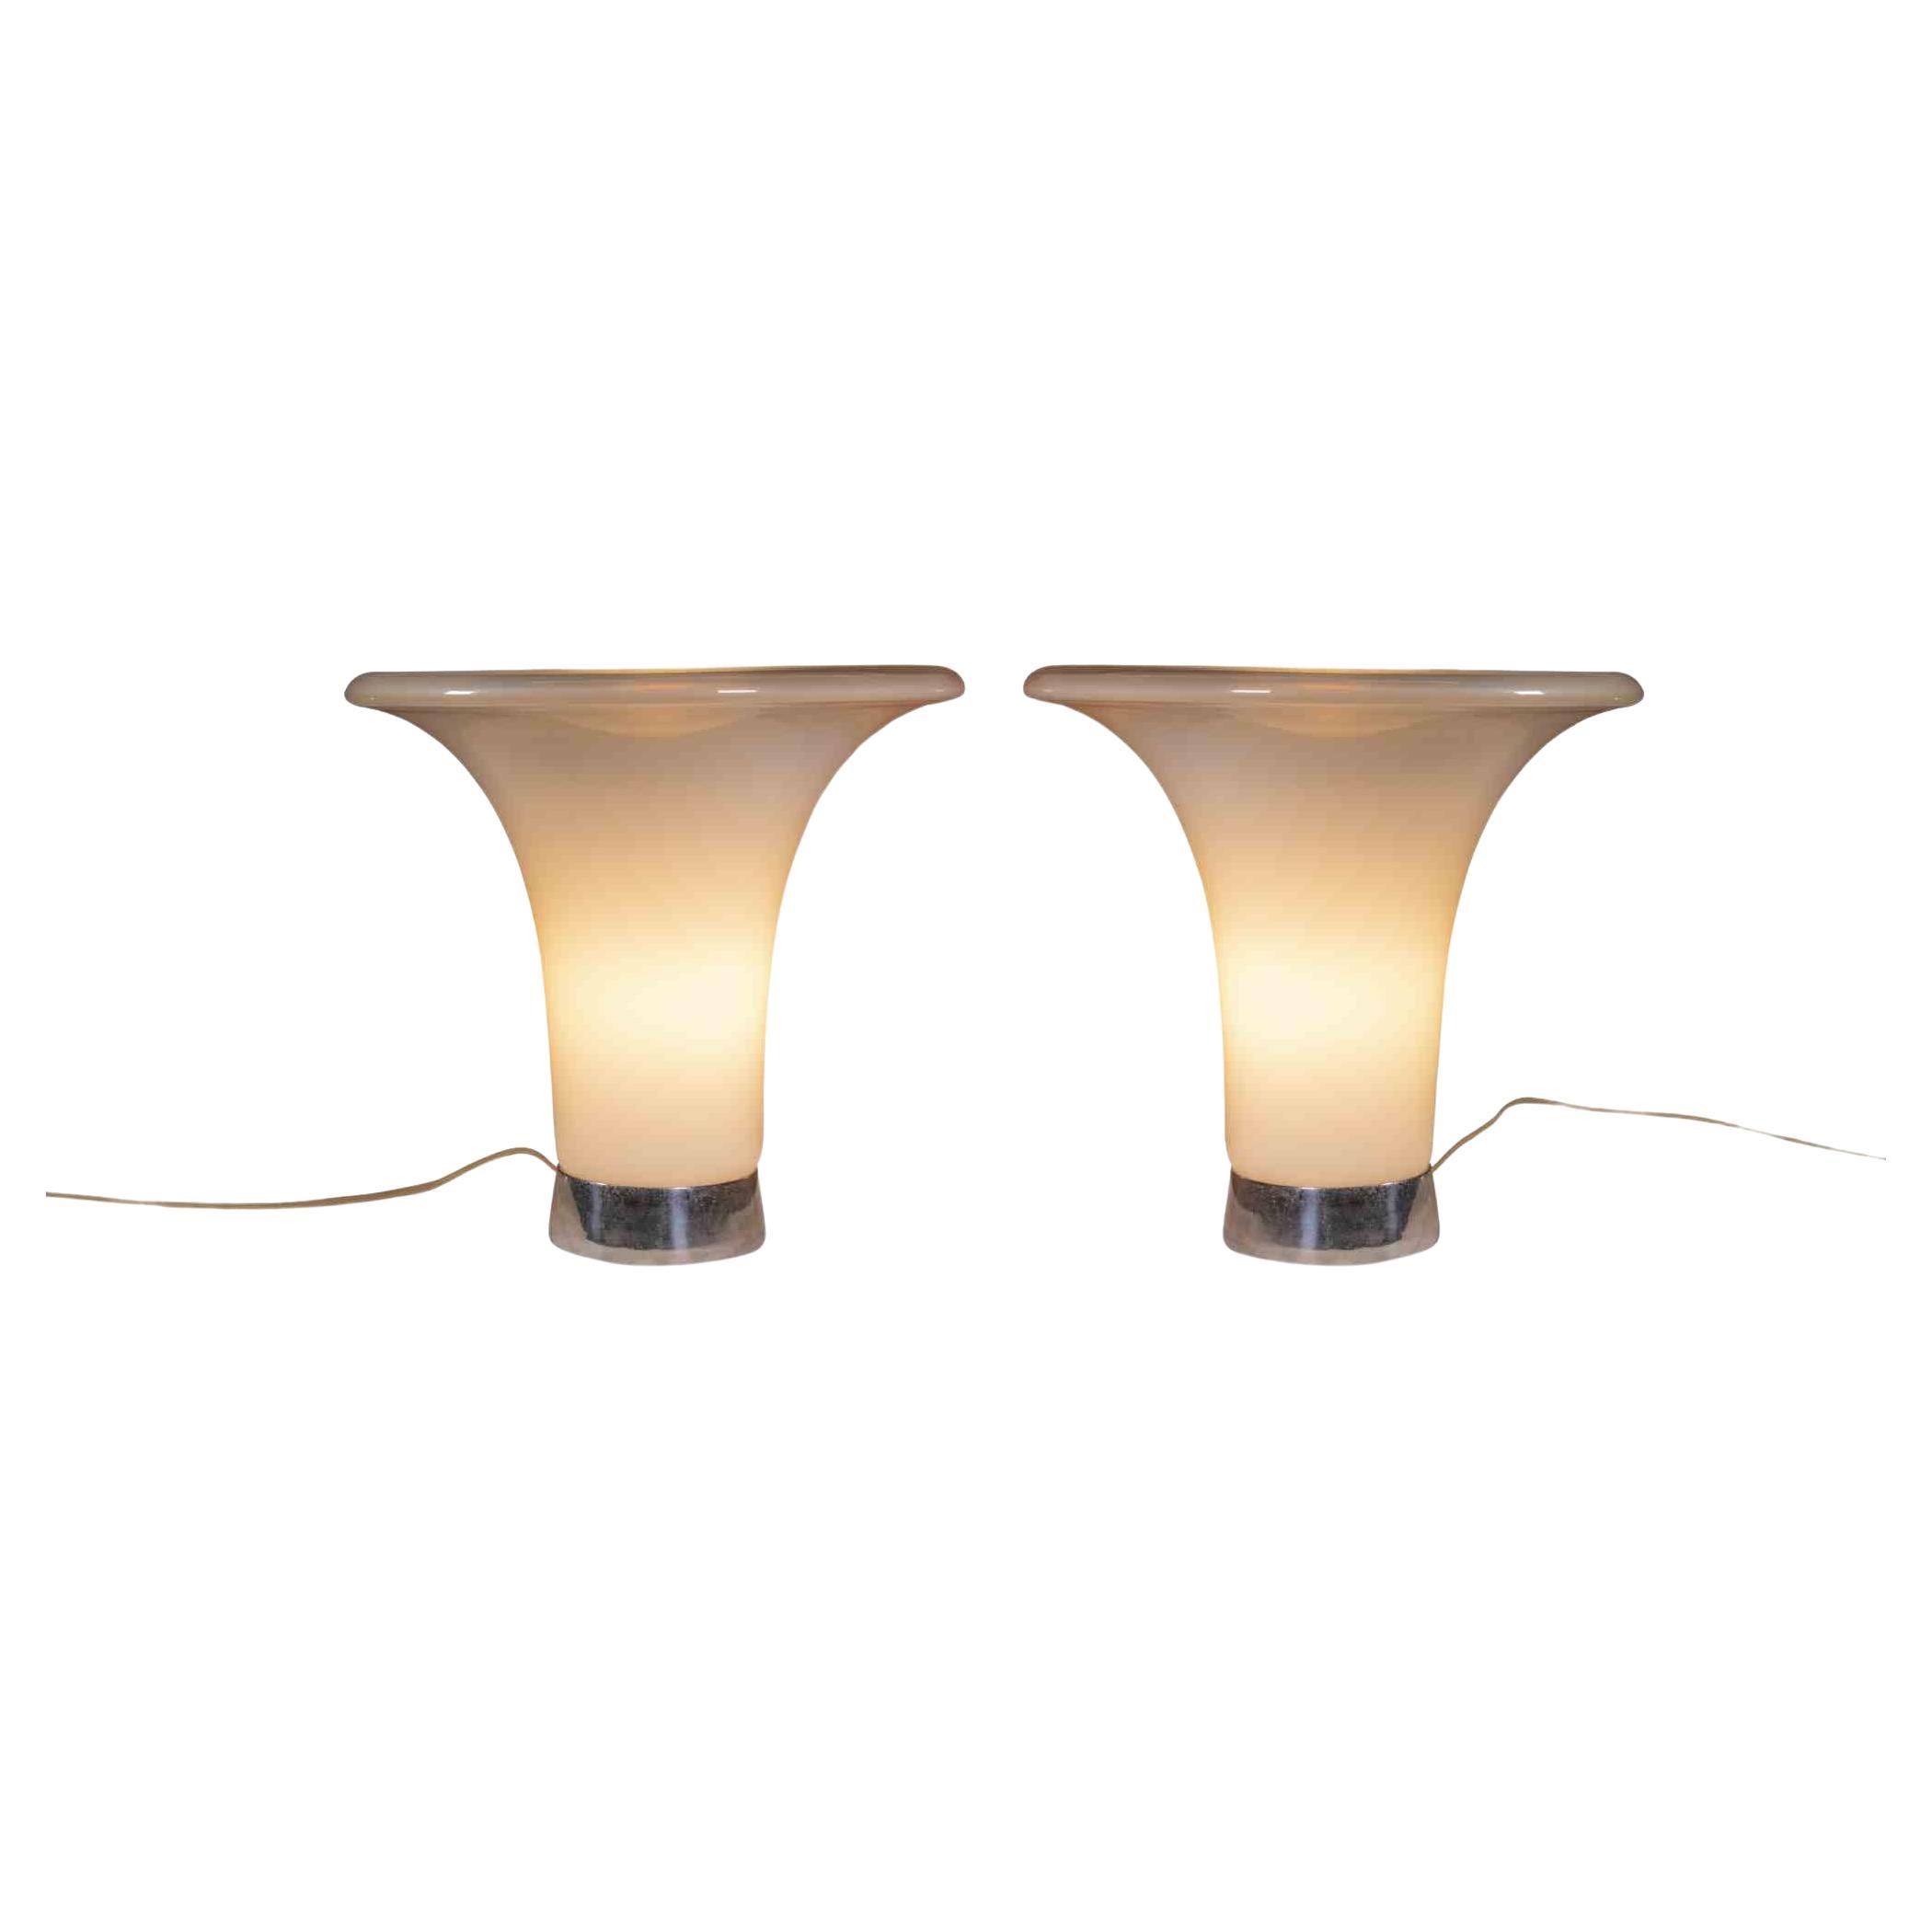 Couple de lampes de table est un  objet de design réalisé dans les années 1960 par Gino Vistosi pour Vetreria Vistosi.

Lampe en verre d'art avec base en métal.

Une paire de lampes design à collectionner !



Vetreria Vistosi est une entreprise